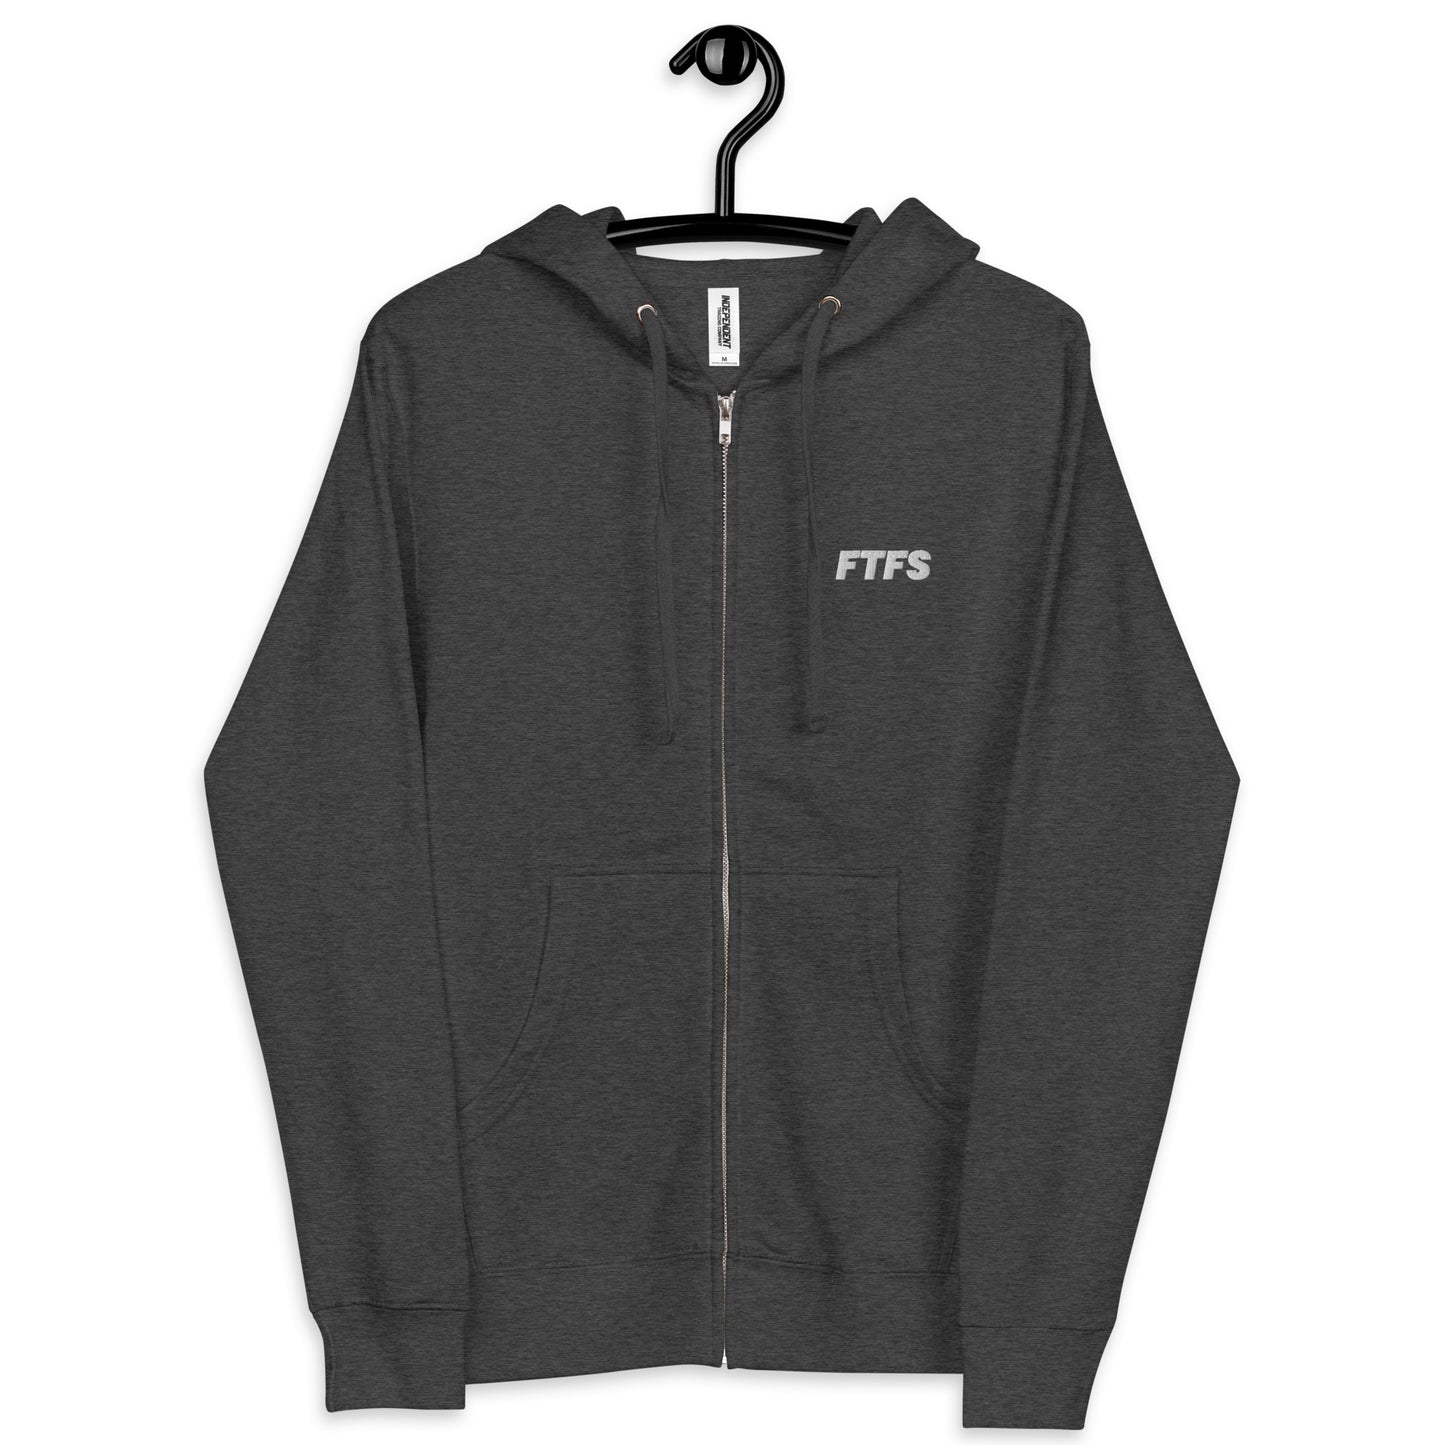 Never Stop Growing Unisex fleece zip up hoodie